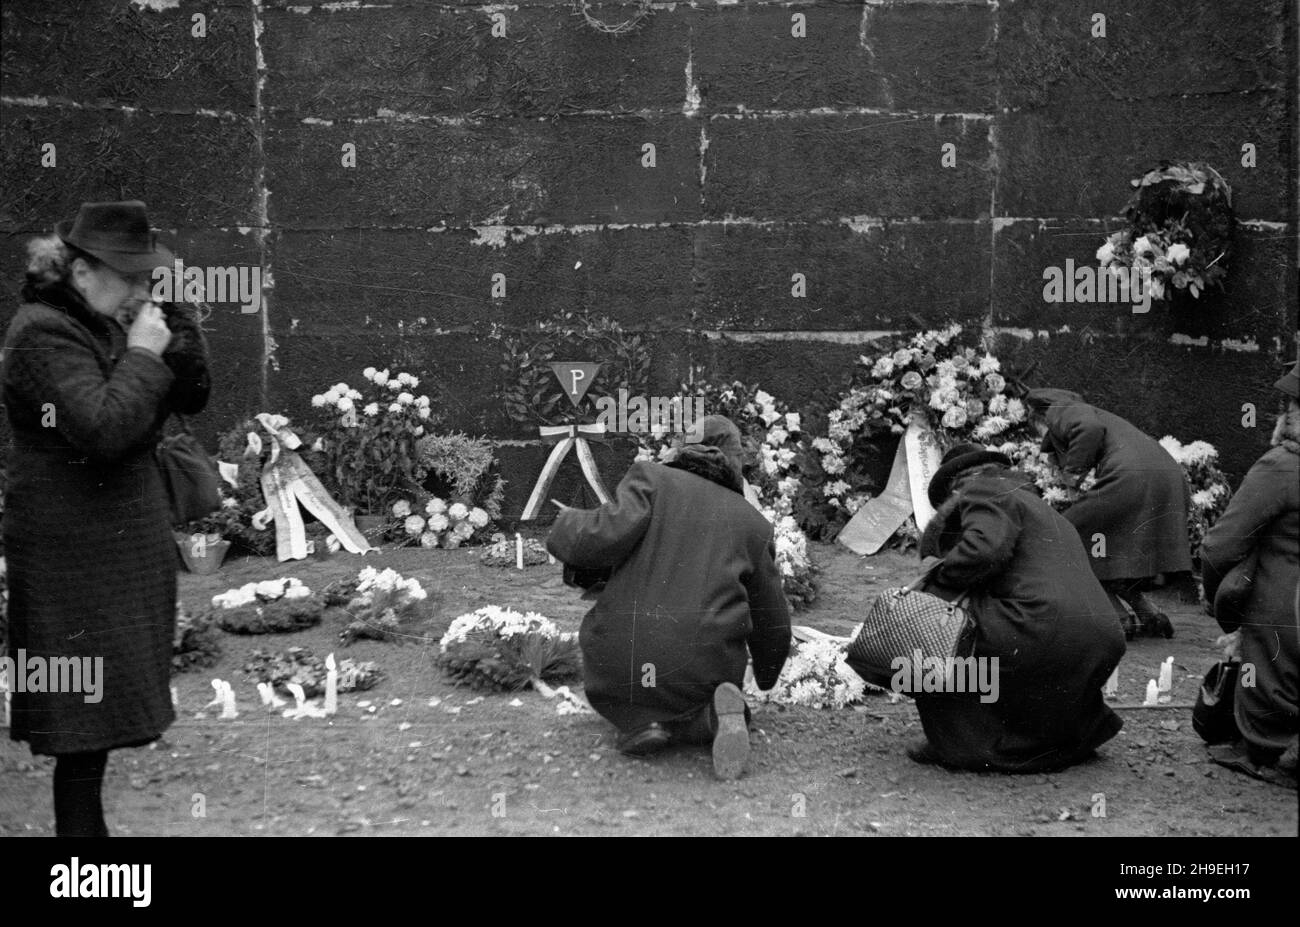 Oœwiêcim, 1947-11-01. By³y niemiecki obóz koncentracyjny Auschwitz-Birkenau. Nz. kobiety zapalaj¹ œwieczki przy œcianie œmierci na dziedziñcu bloku XI, gdzie dokonywano egzekucji. ps/gr  PAP      Oswiecim, Nov. 1, 1947. Former concentration camp Auschwitz-Birkenau. Pictured: girls lighting candles at the death wall, the execution site, on the yard of the 11th block.  ps/gr  PAP Stock Photo